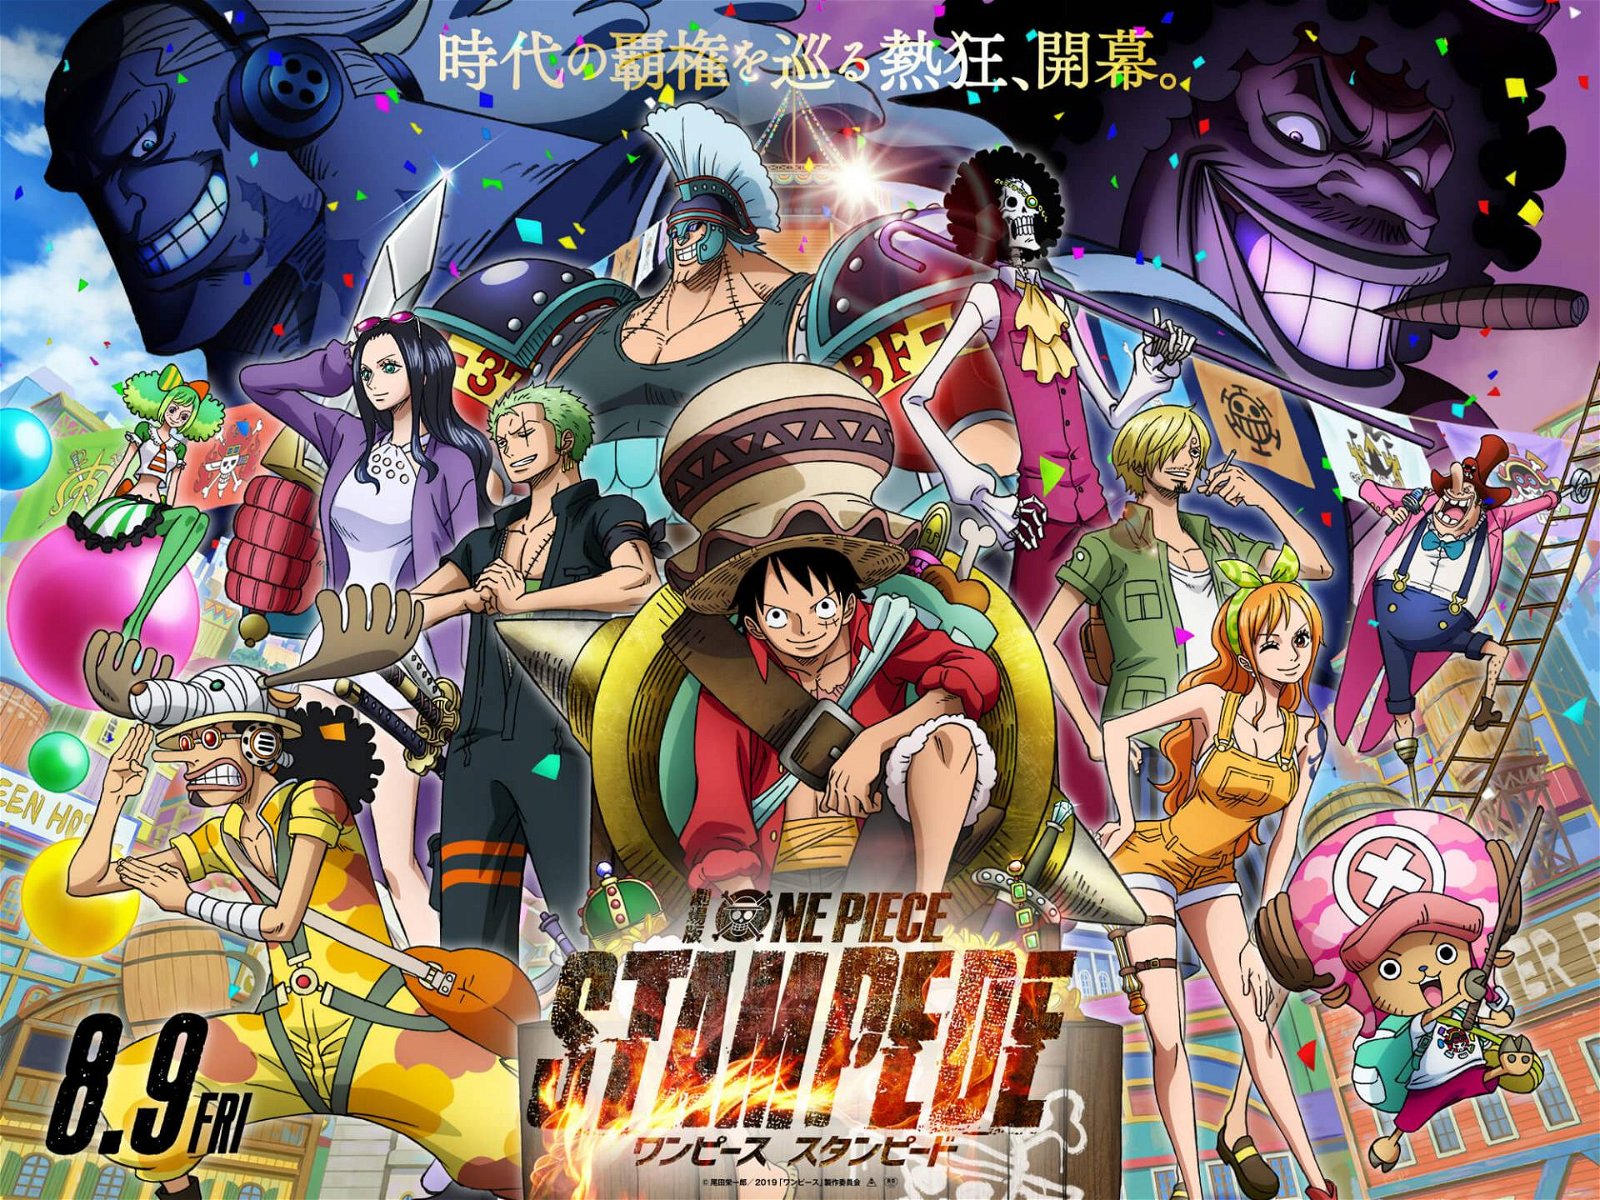 Immagine di One Piece: Stampede, trailer e data di lancio per il film in Italia